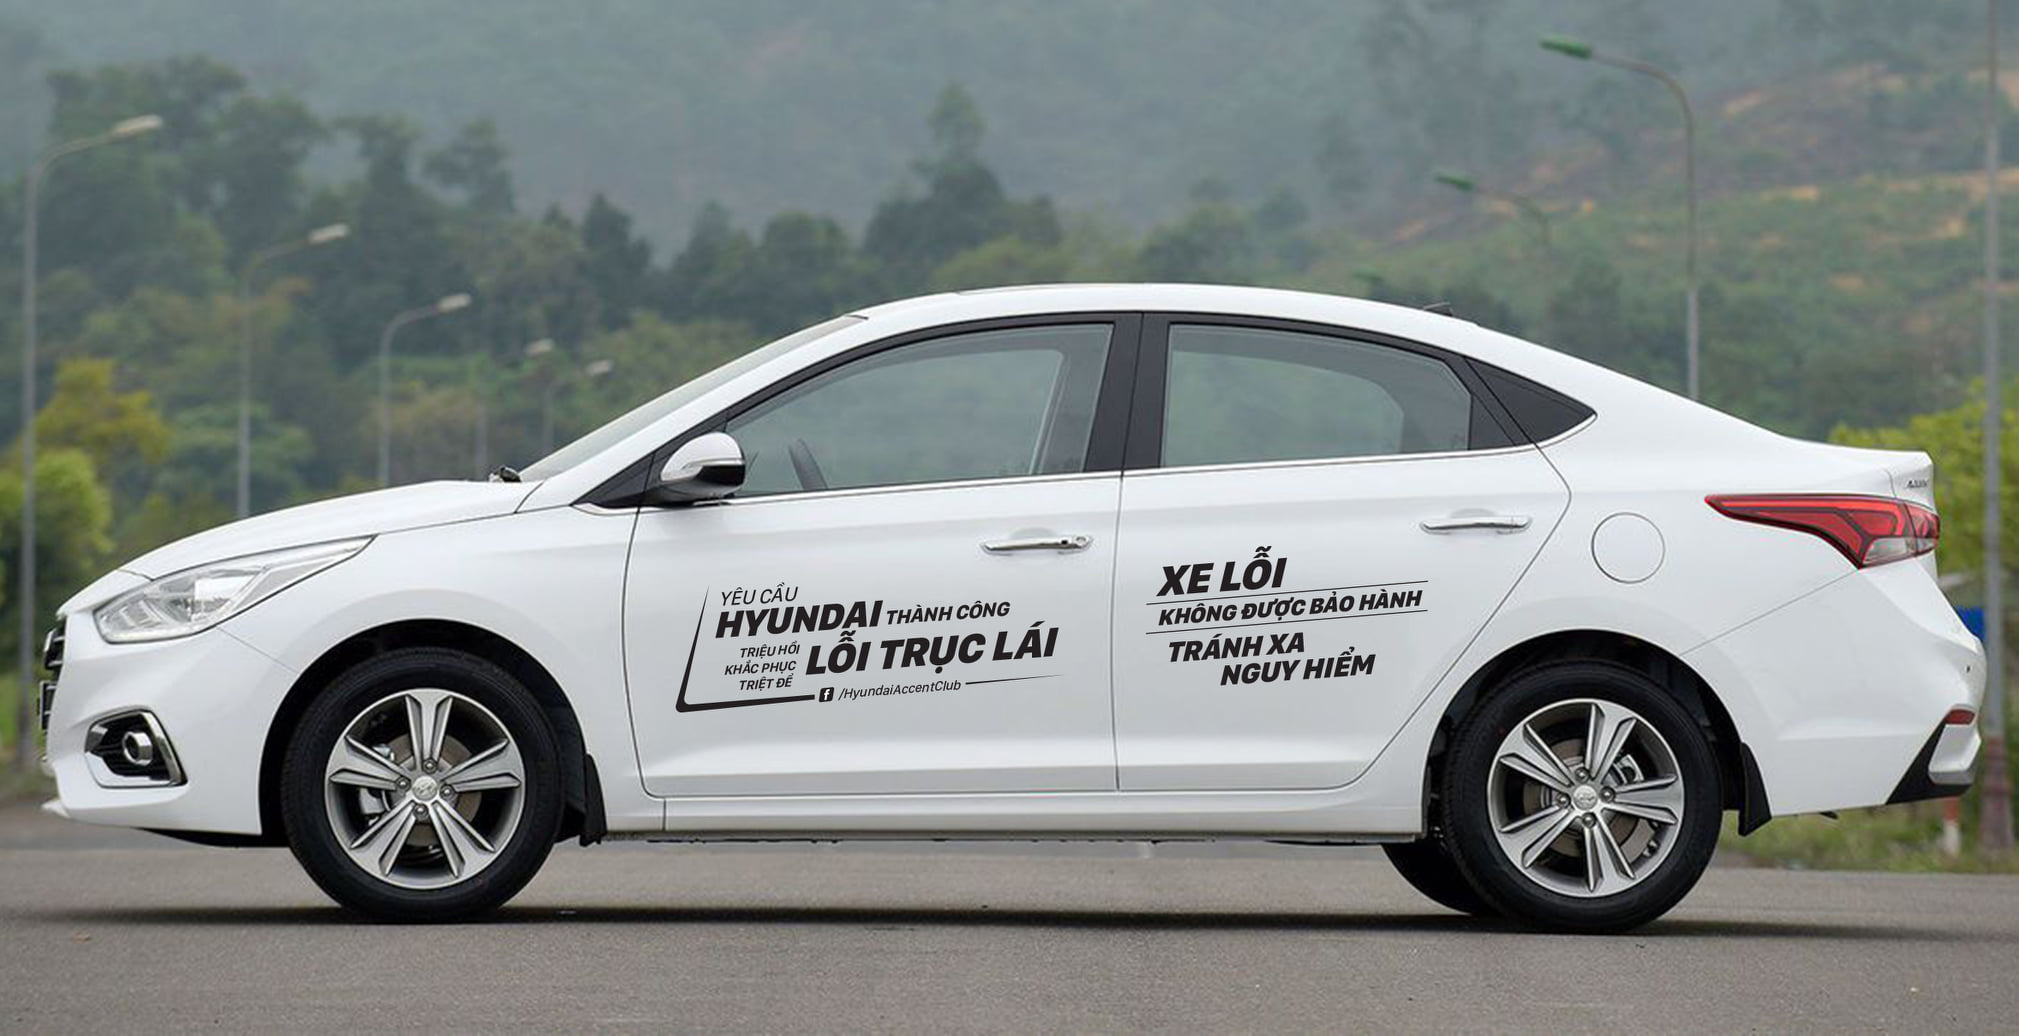 Hyundai Accent, kẻ ngáng đường  Toyota Vios dính lỗi khó chịu, nhiều đại lý kiếm cớ từ chối bảo hành